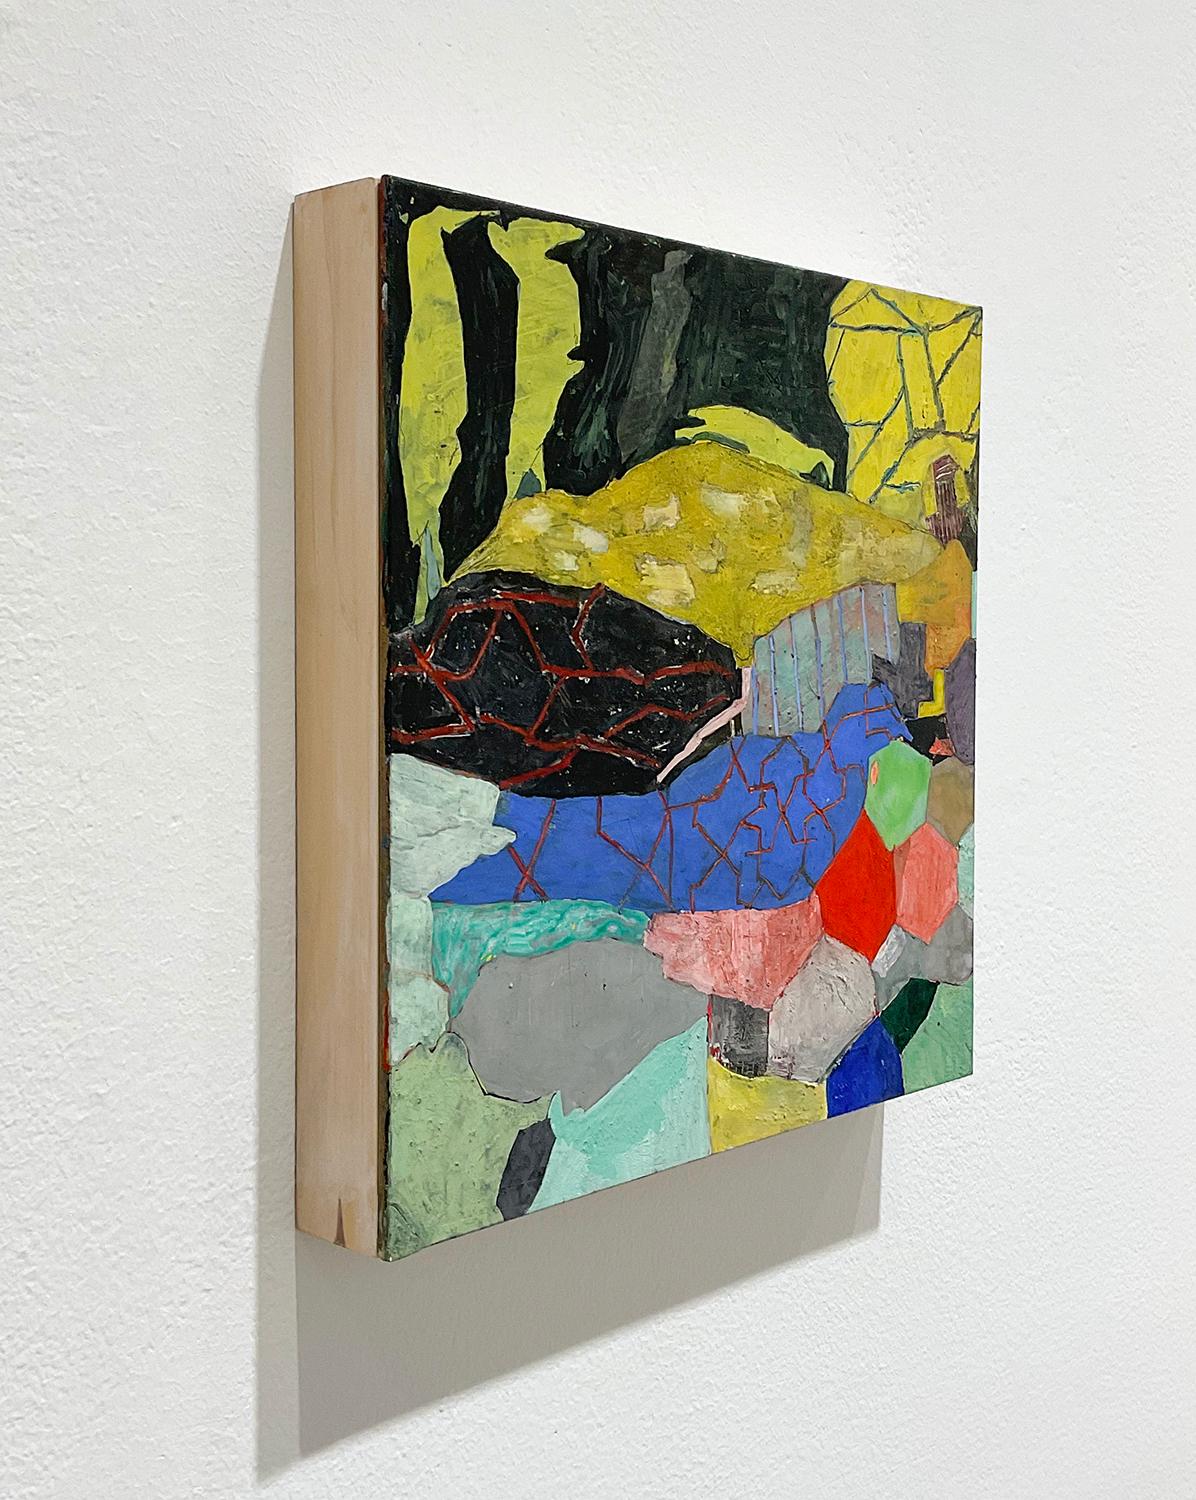 Au lieu de cela, une peinture abstraite géométrique gestuelle colorée sur panneau - Contemporain Mixed Media Art par Anne Francey